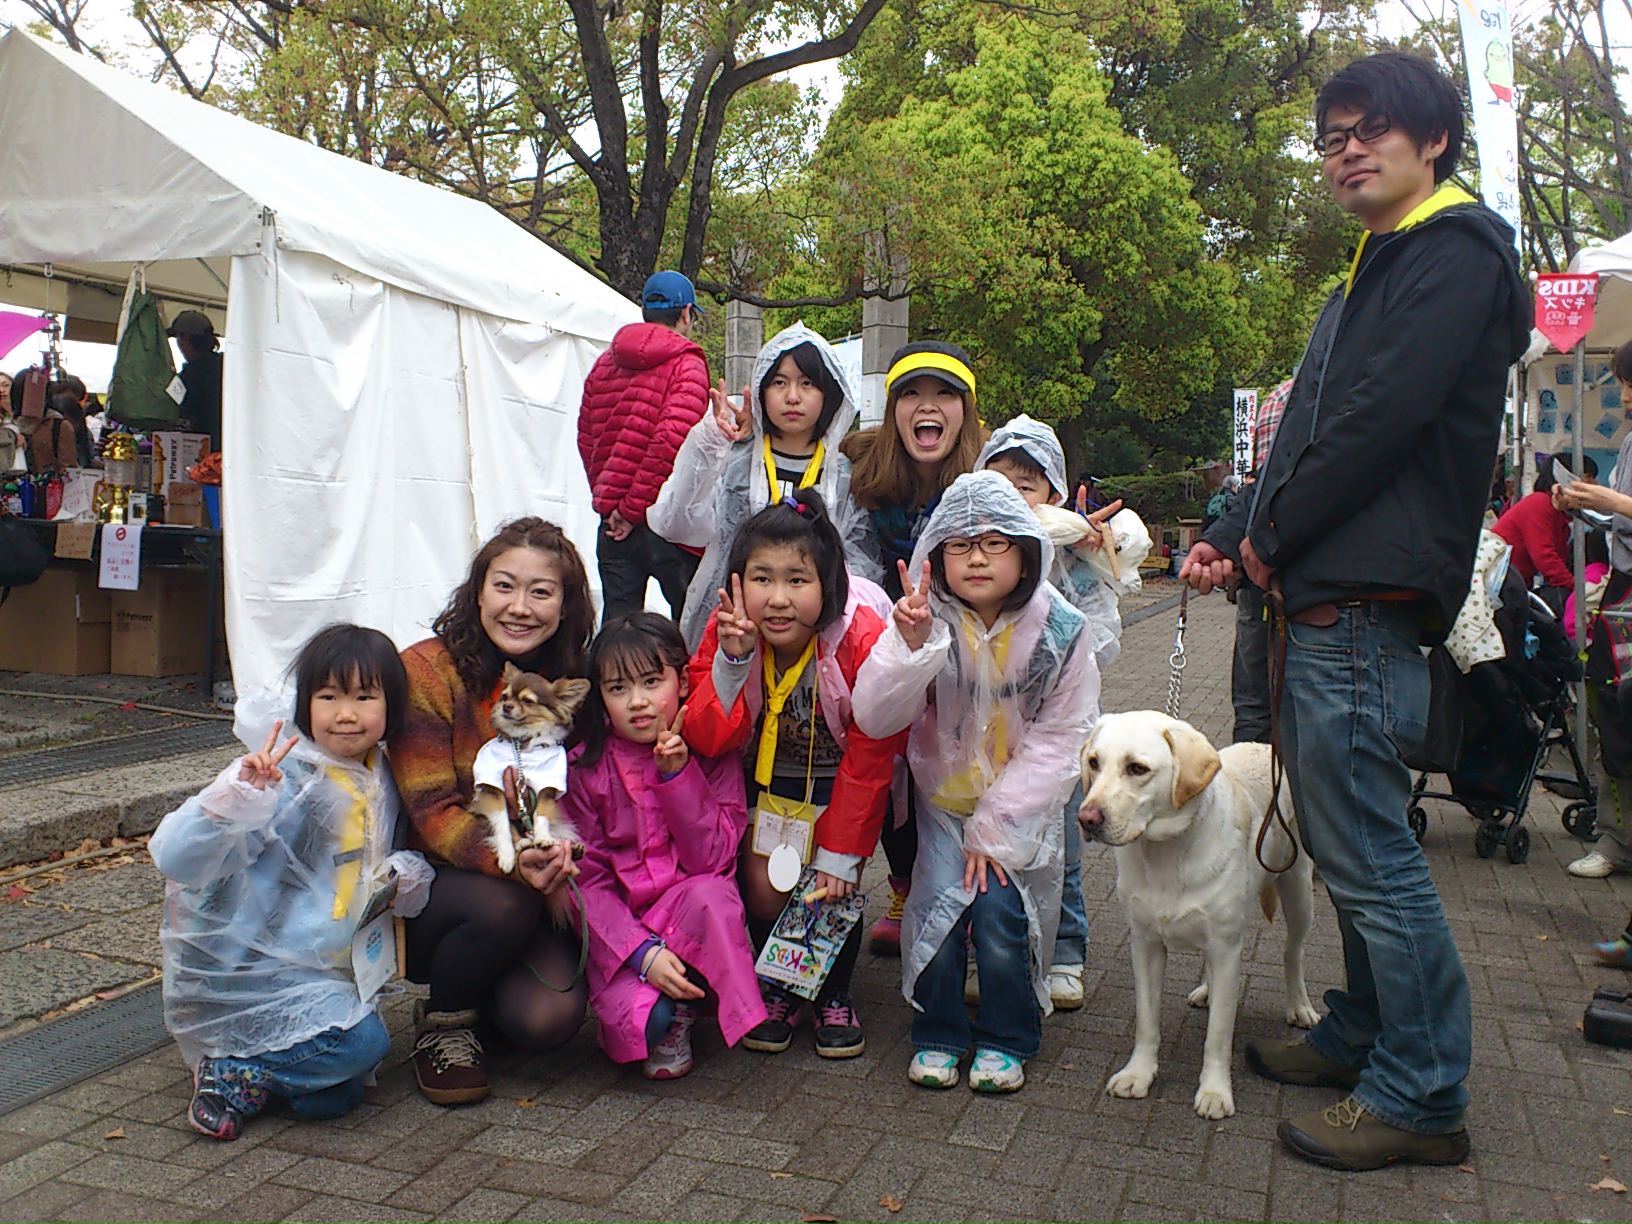 http://gentleone.jp/report/event/2012-04-22%2012.19.37.JPG